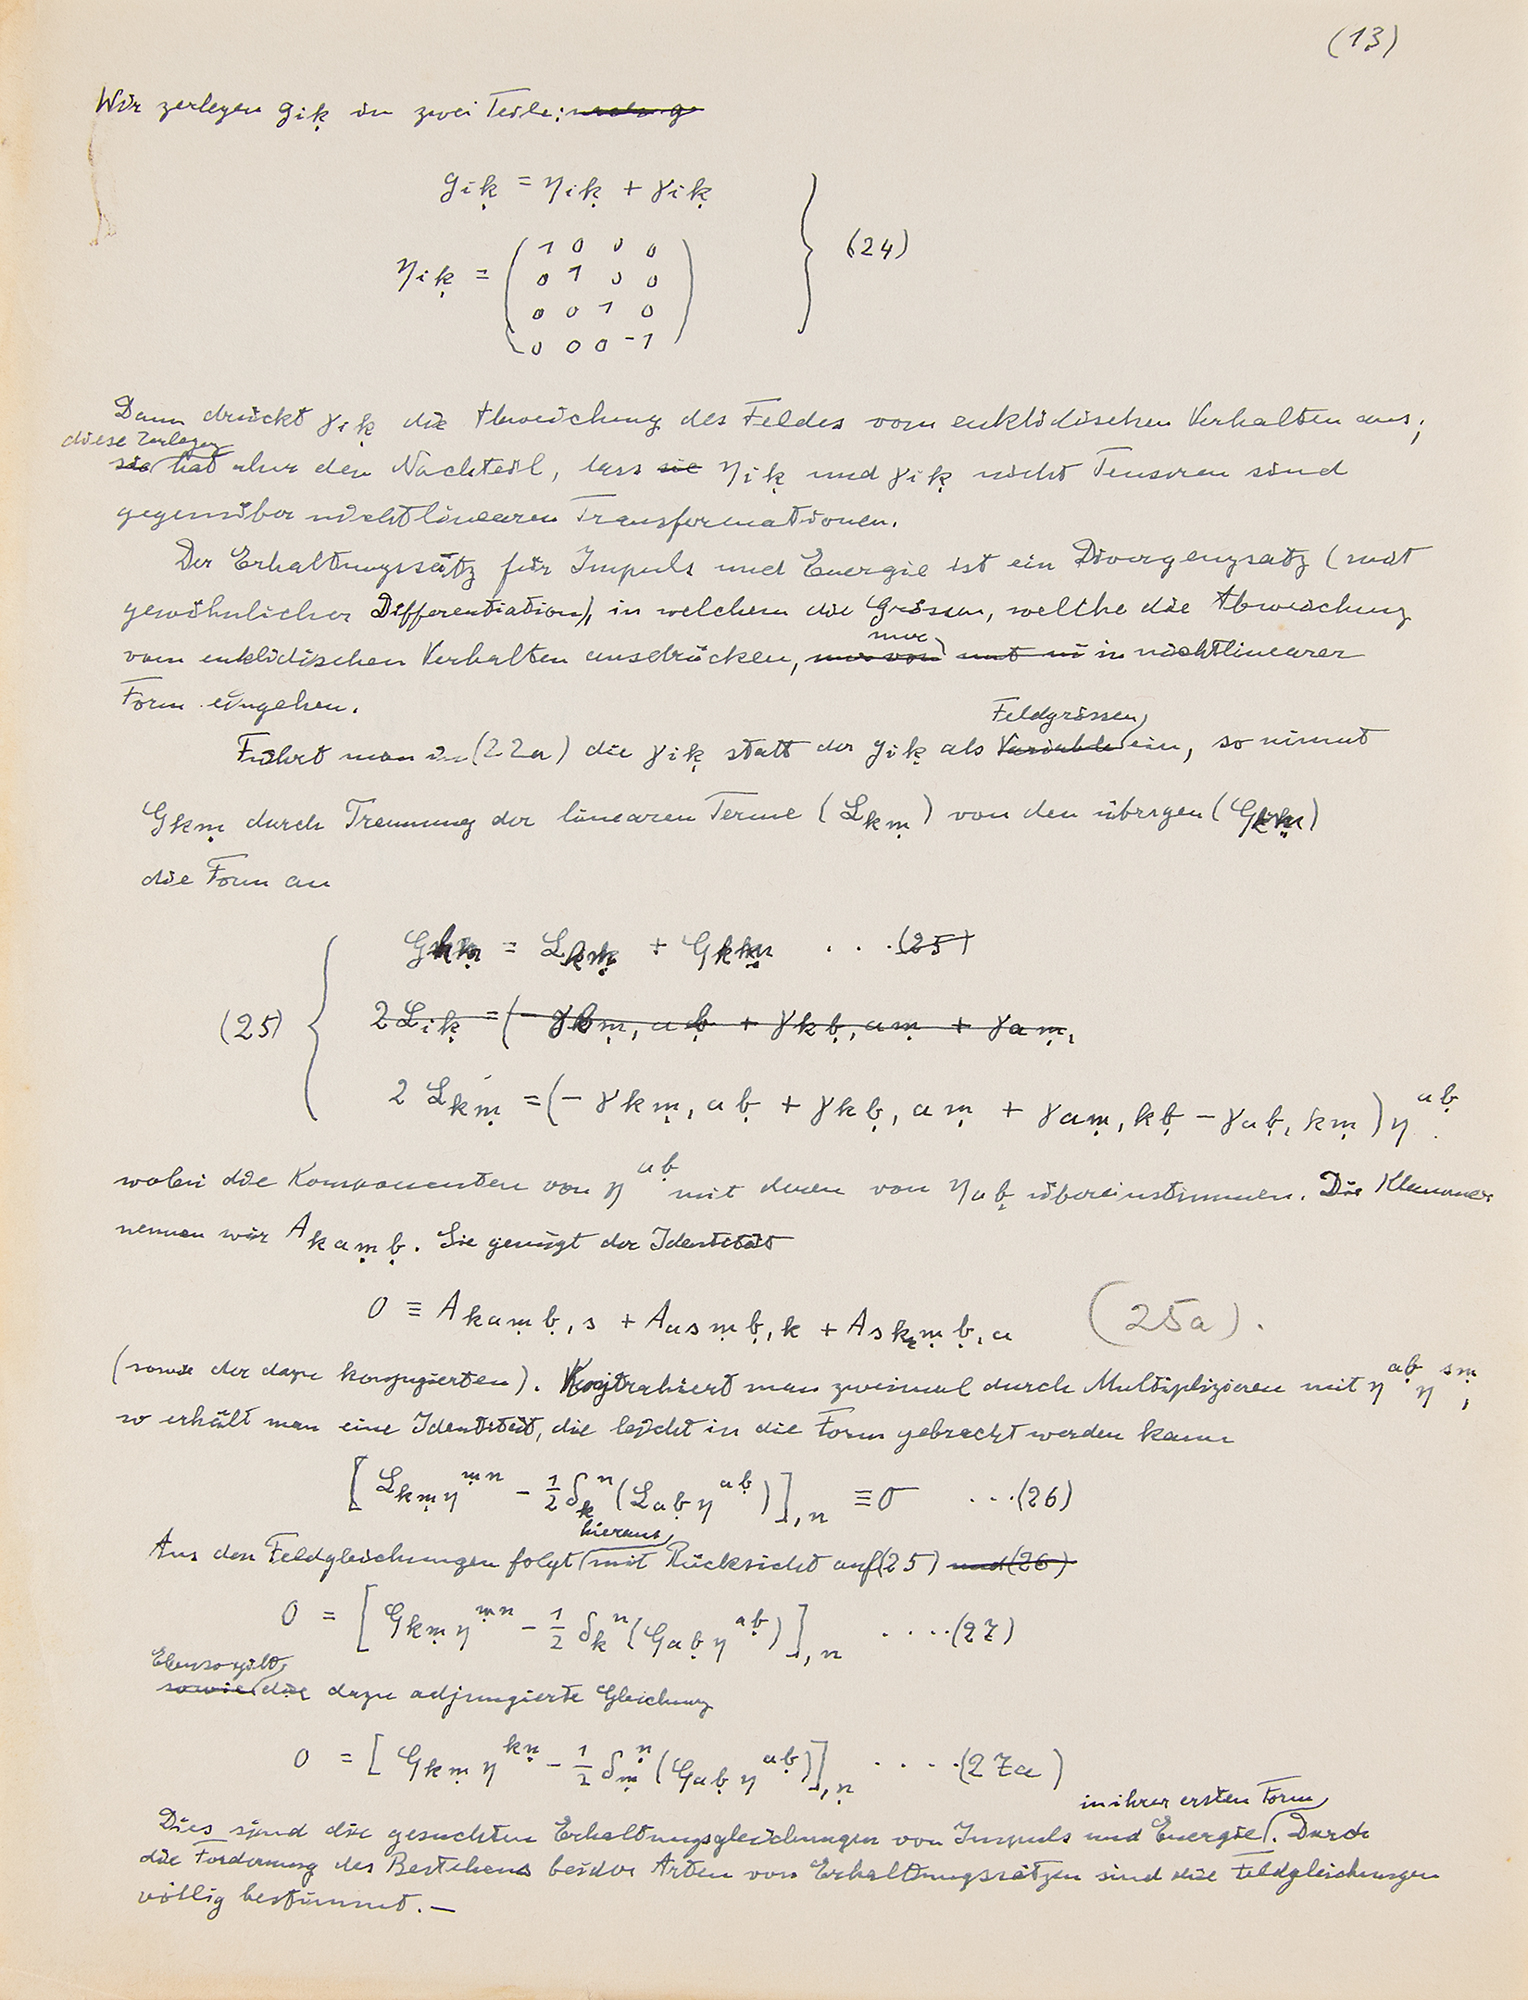 Lot #263 Albert Einstein Handwritten Scientific Manuscript